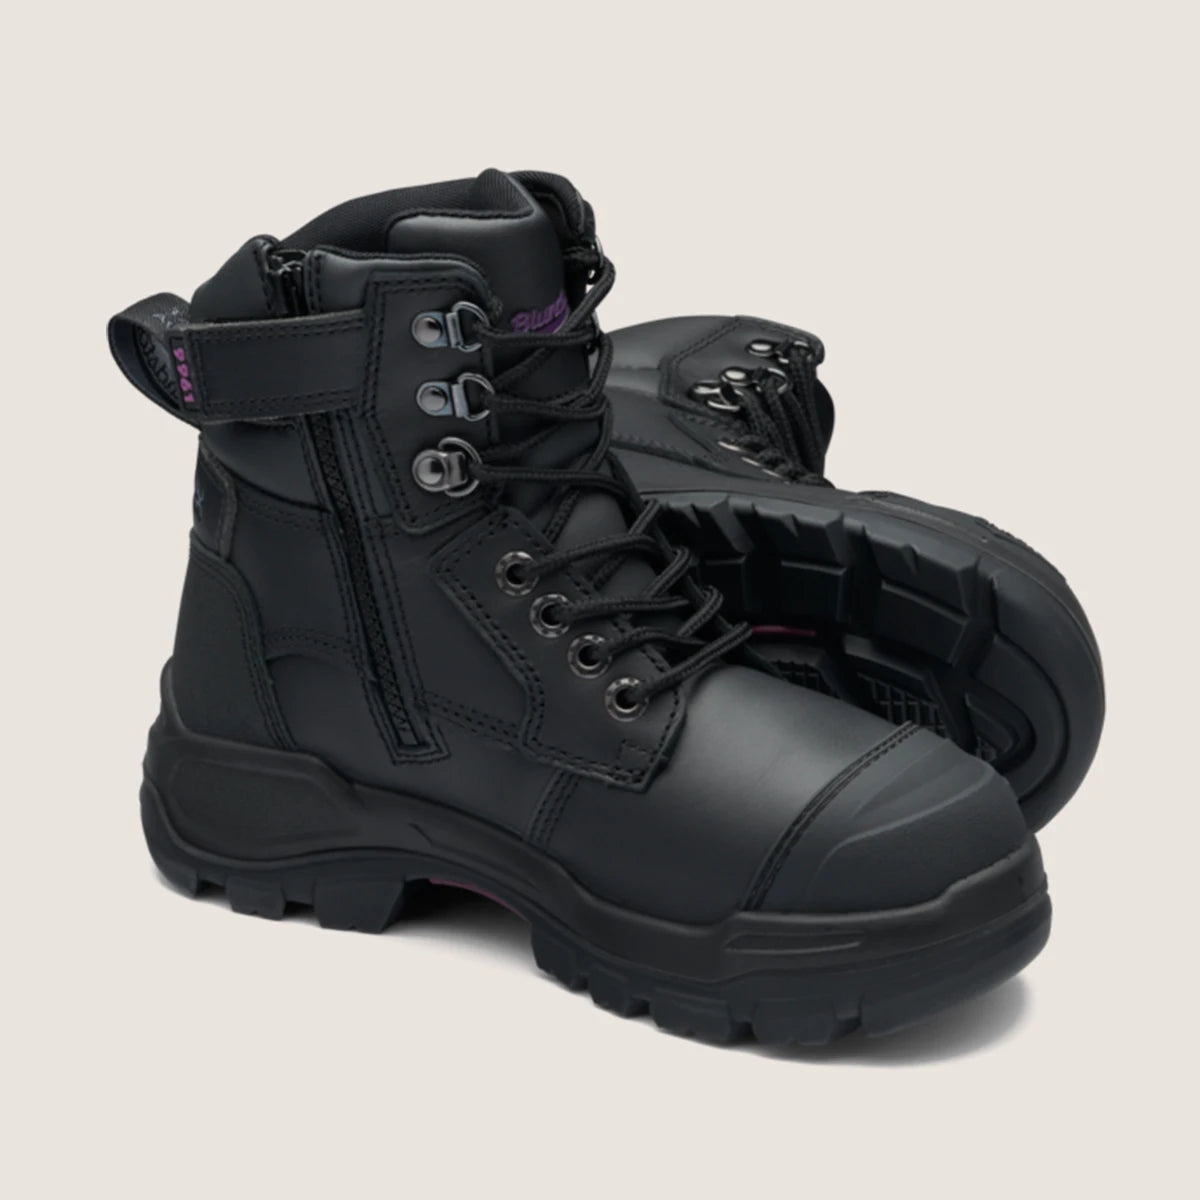 Blundstone 9961 Women's RotoFlex Safety Boots - Black